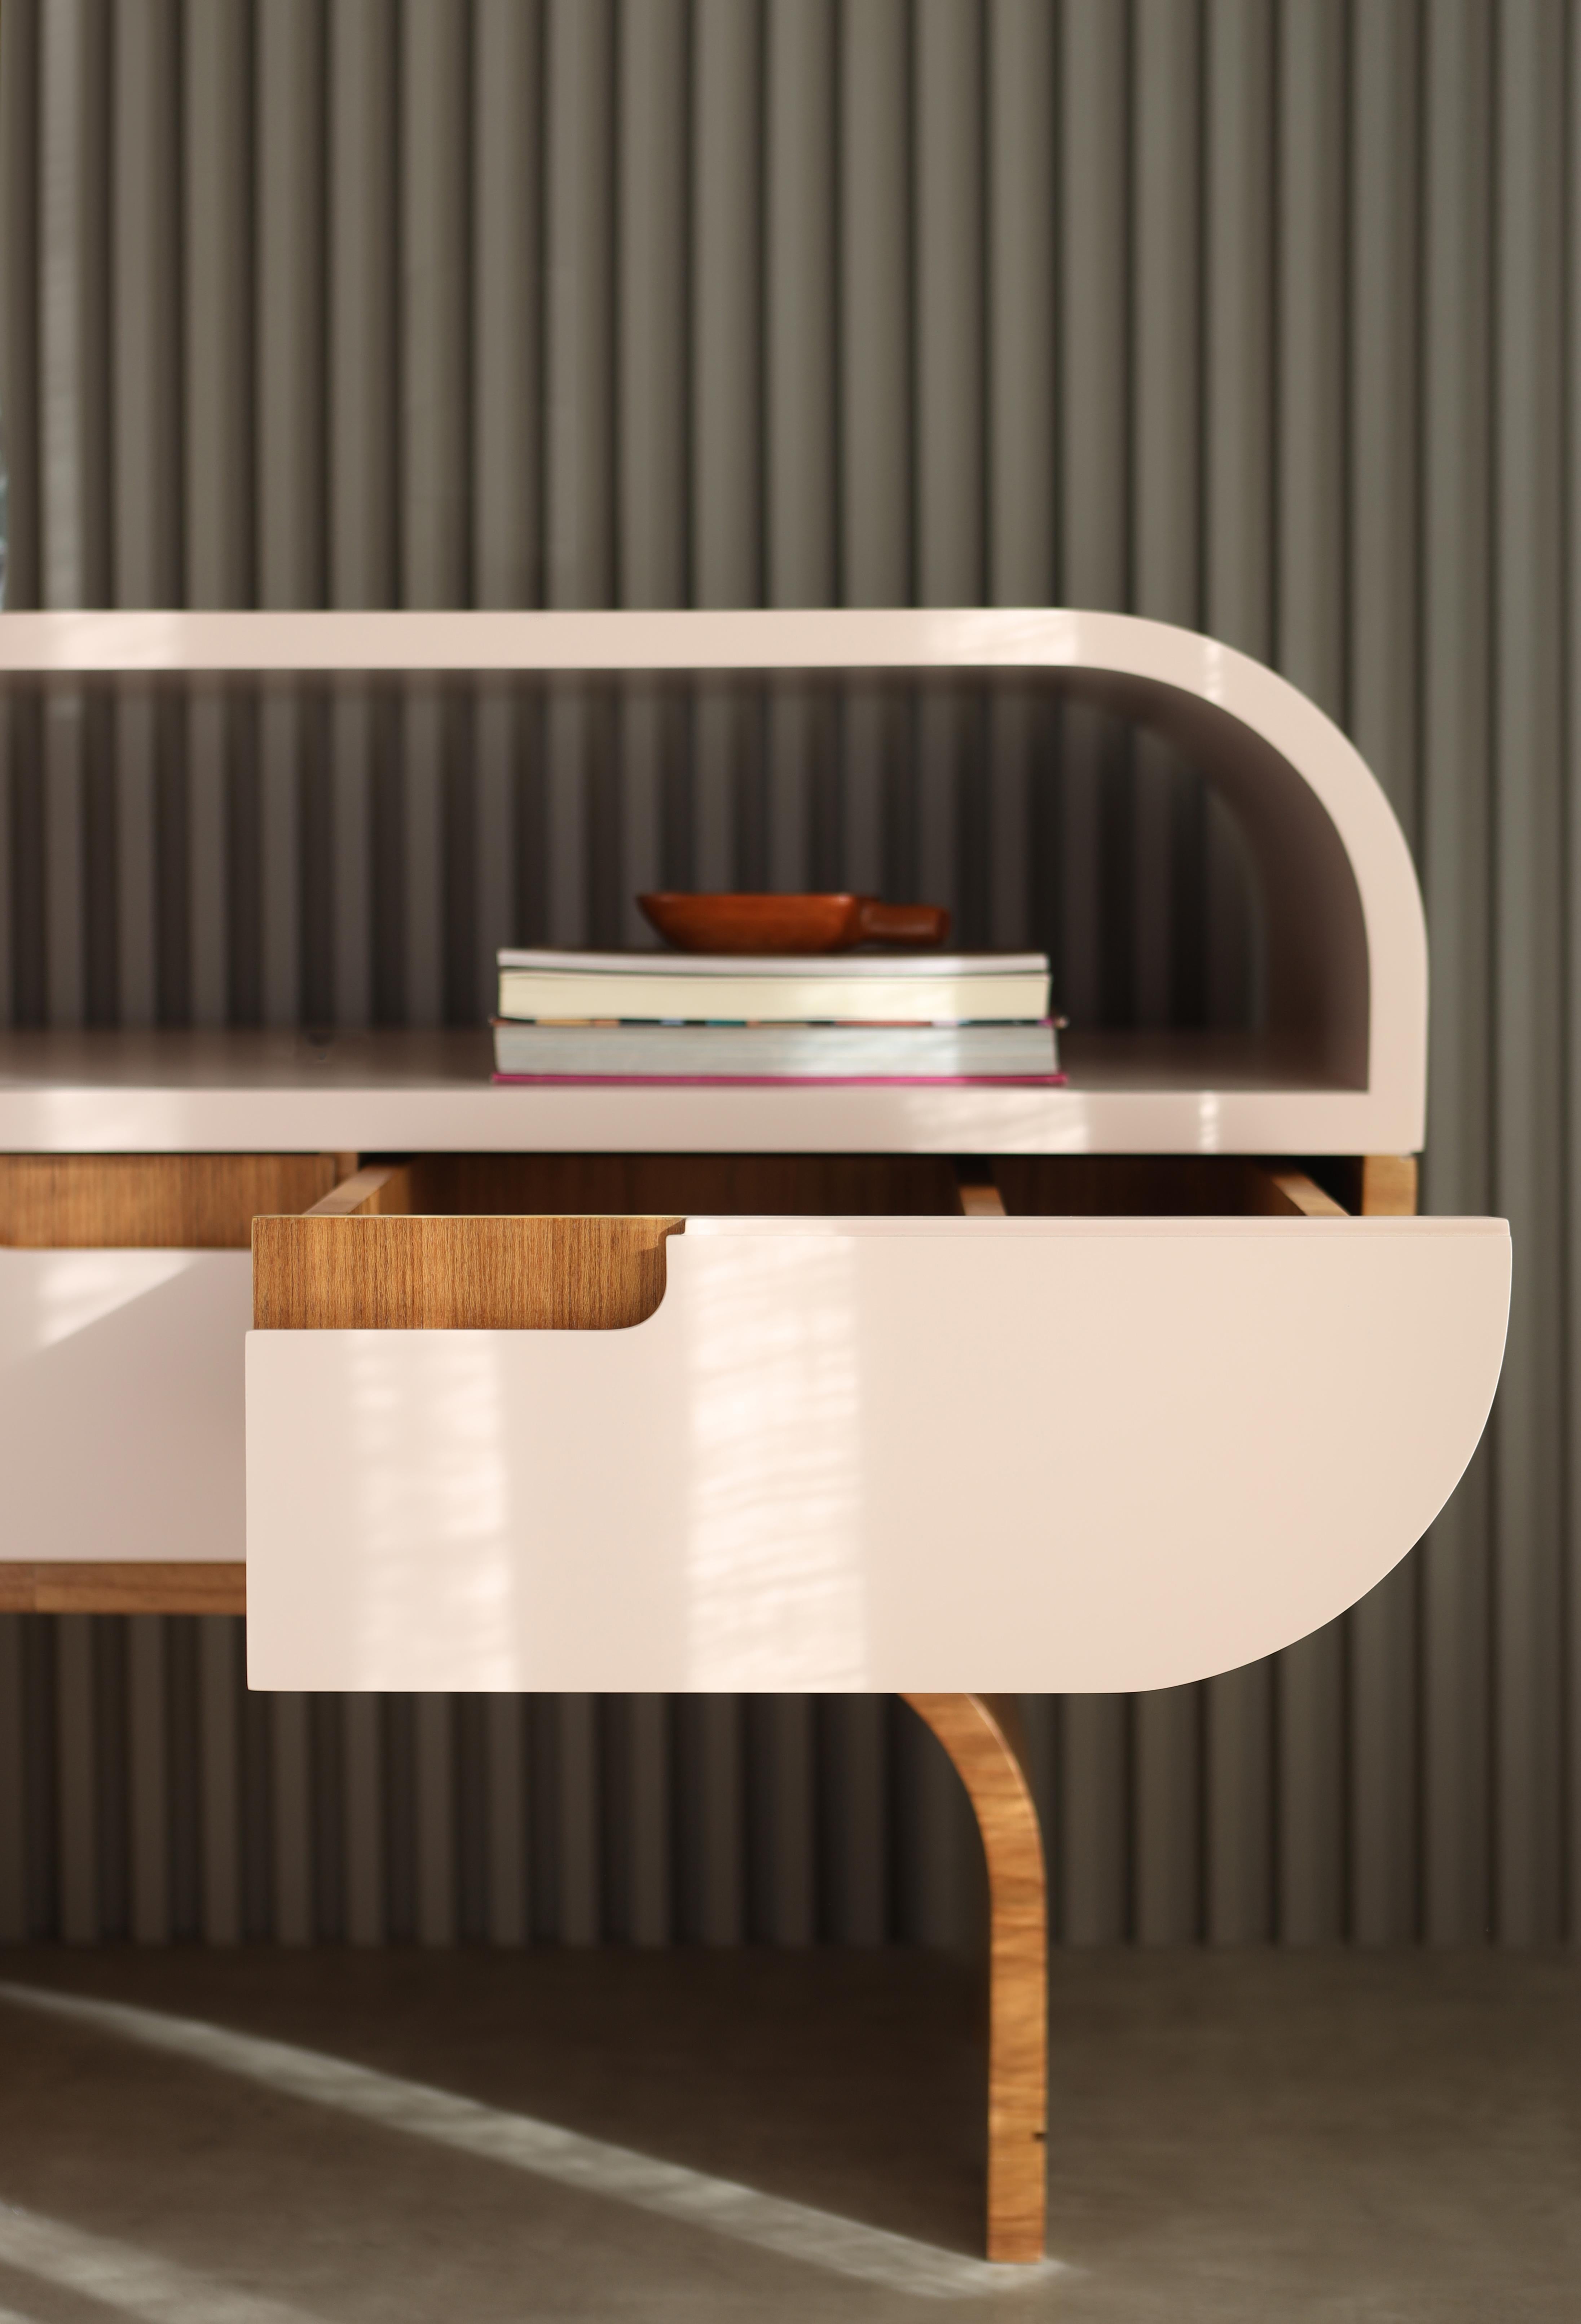 Der Nachttisch Midi, dessen Design von den 1960er Jahren inspiriert ist, wird aus einer industriell gefertigten Holzplatte mit Naturblechoberfläche und Lack hergestellt.

Der Midi Nachttisch kann in der größten Größe mit zwei Schubladen und in der